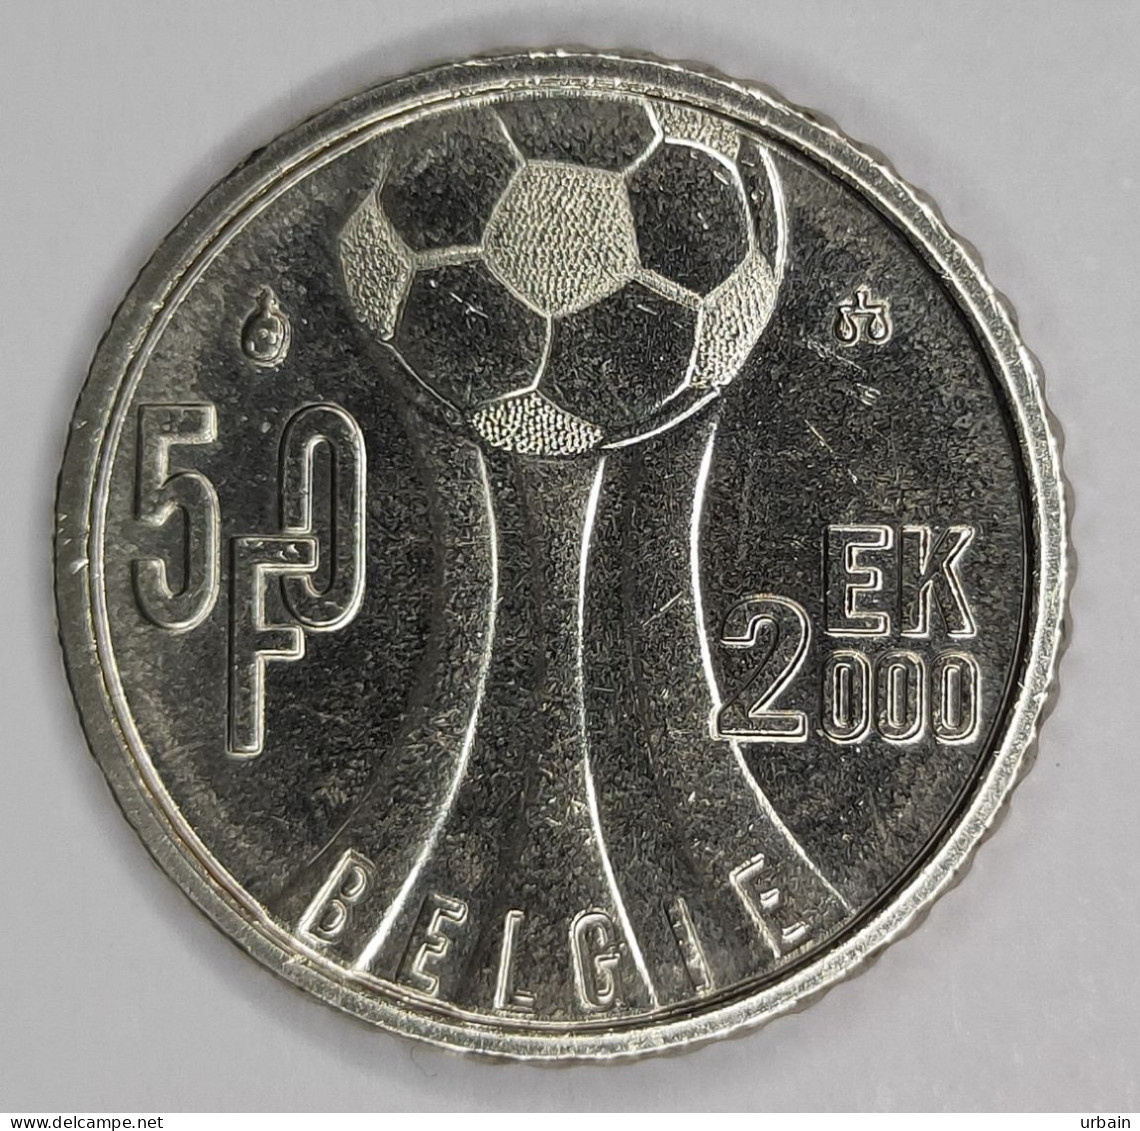 2x Commemorative Coins - Belgium - EK2000 - 50 Francs - 50 Francs